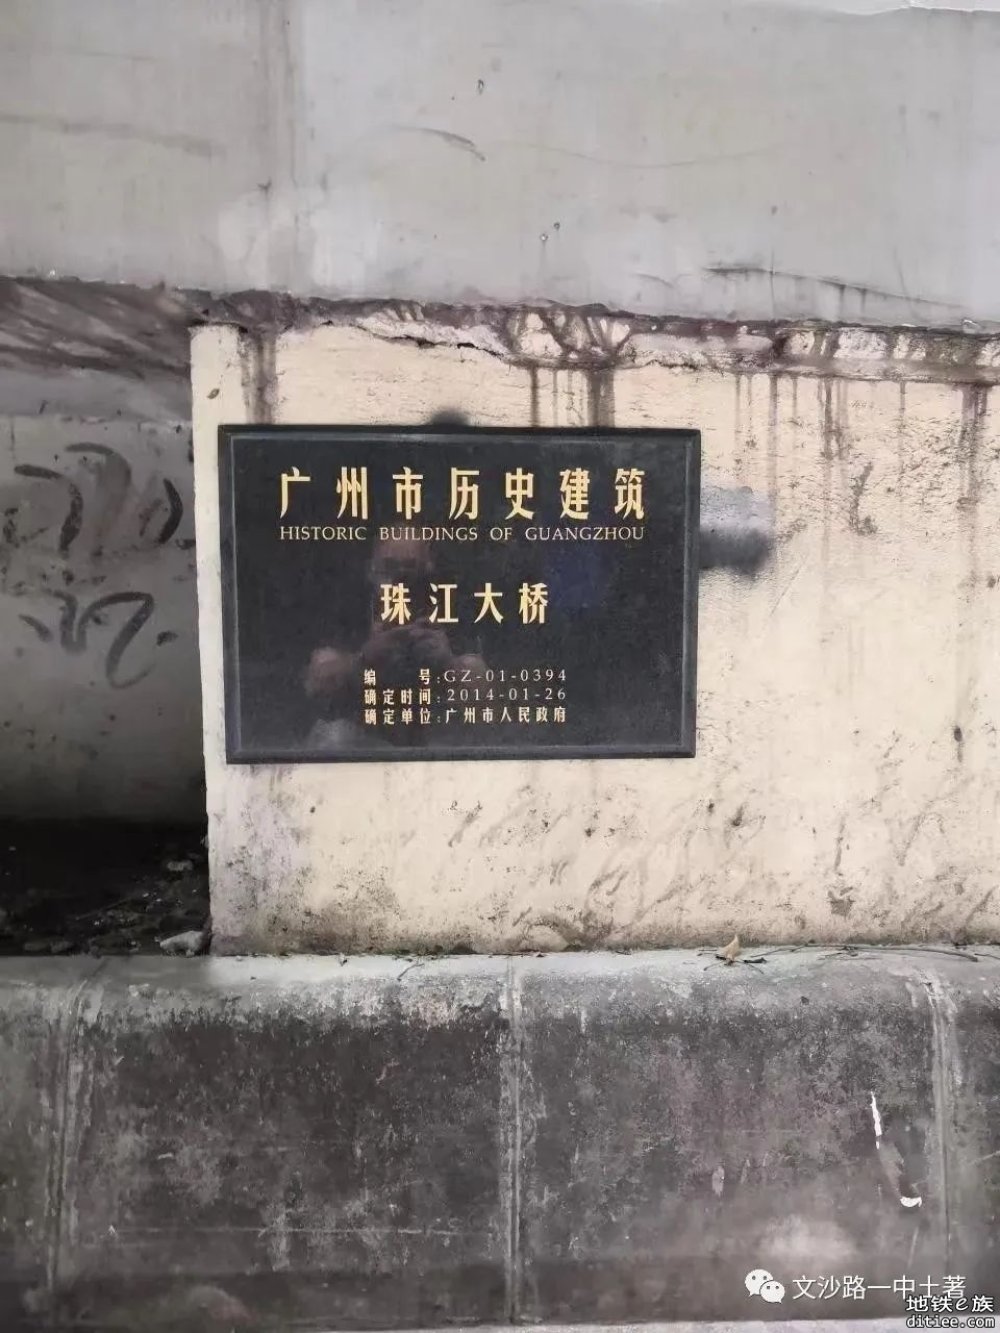 广湛高铁“进城” 珠江大桥或将改建